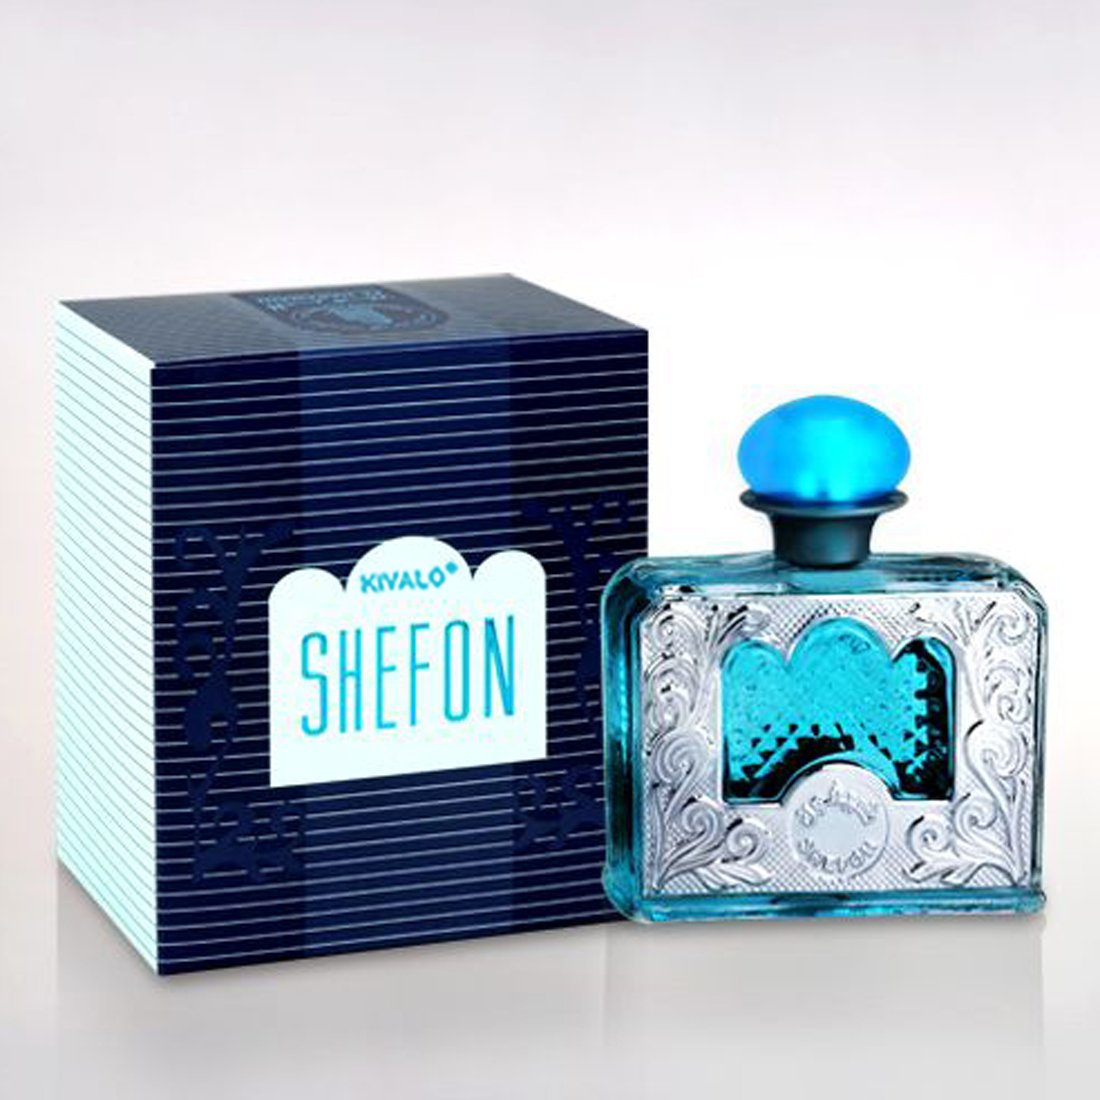 Al Haramain Shefon Perfume Spray - 60 ml